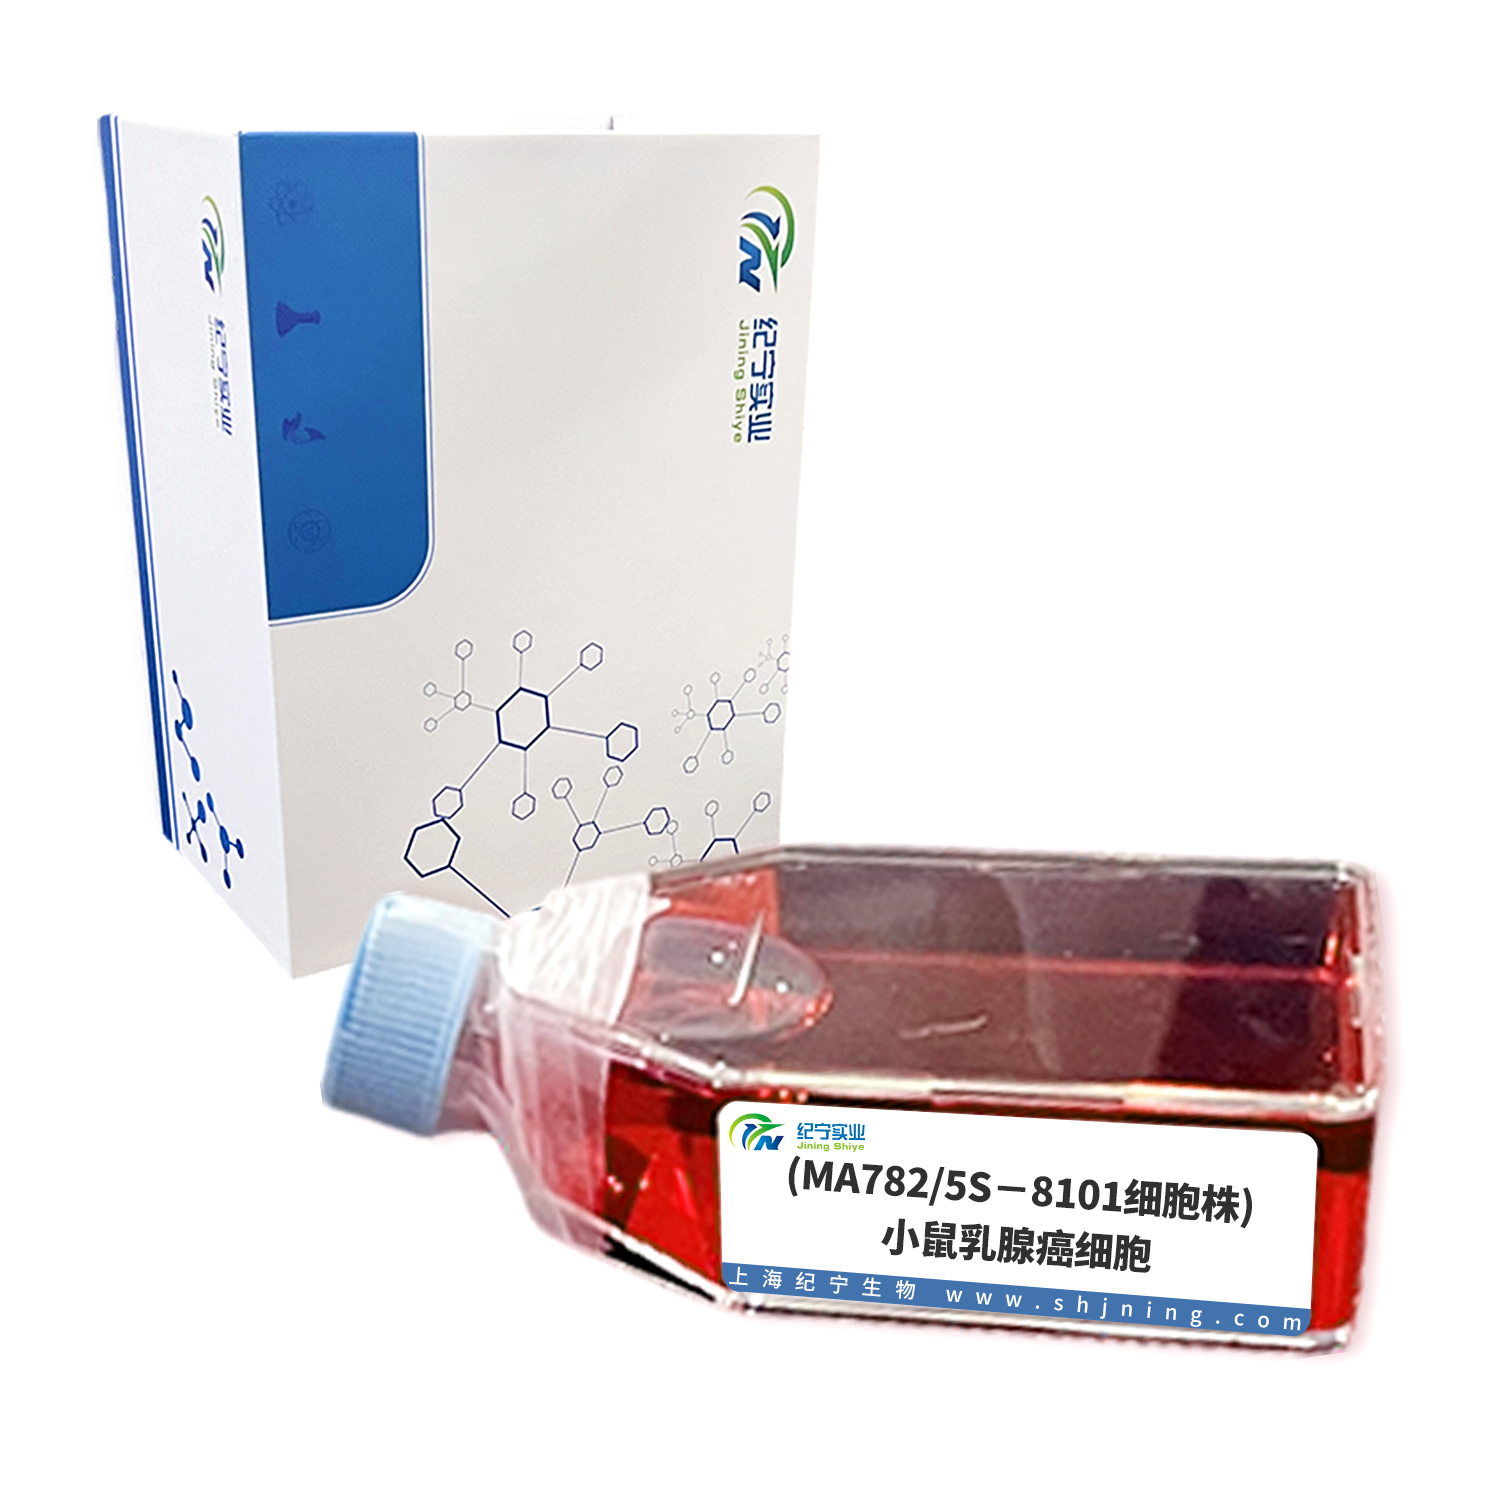 (MA782/5S－8101细胞株)小鼠乳腺癌细胞